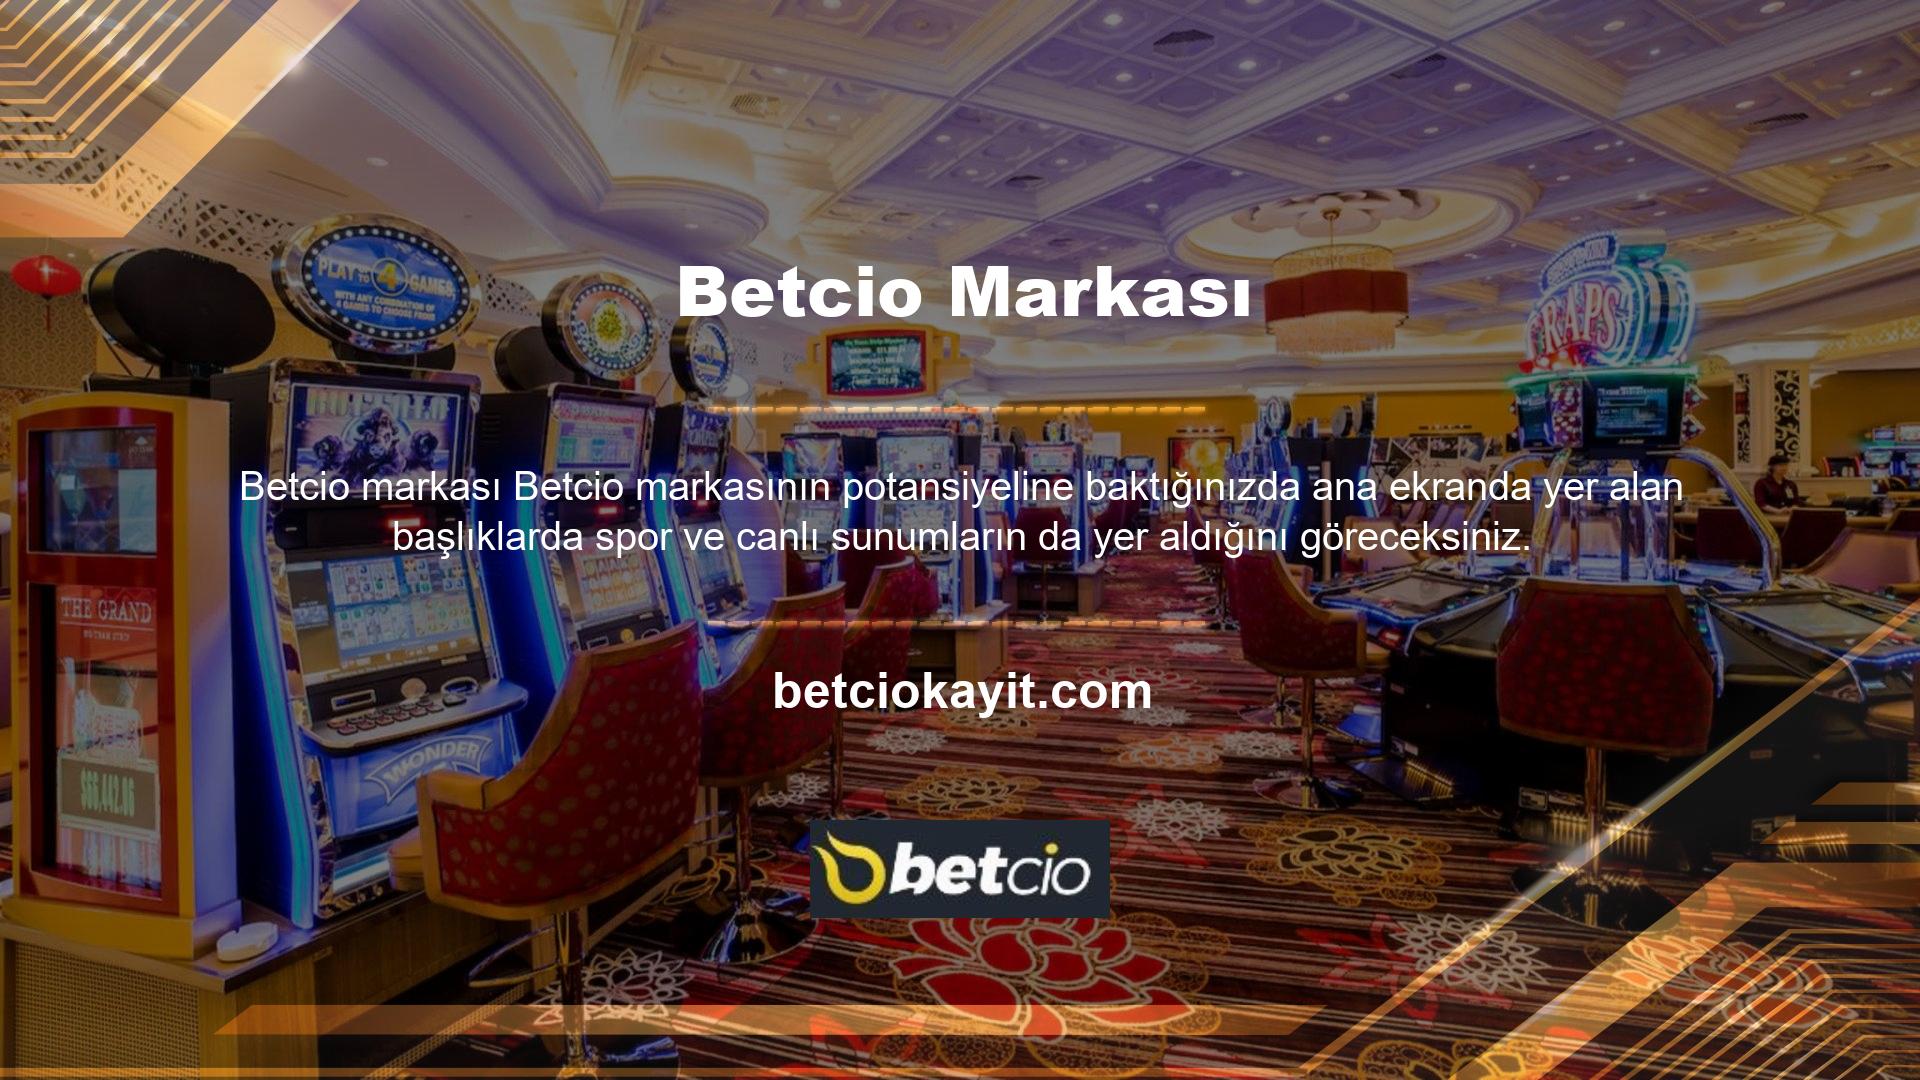 Betcio nasıl bir site? Bu marka aracılığıyla sunulan hizmetler arasında bahis başlıkları ve oyun grupları bulunmaktadır